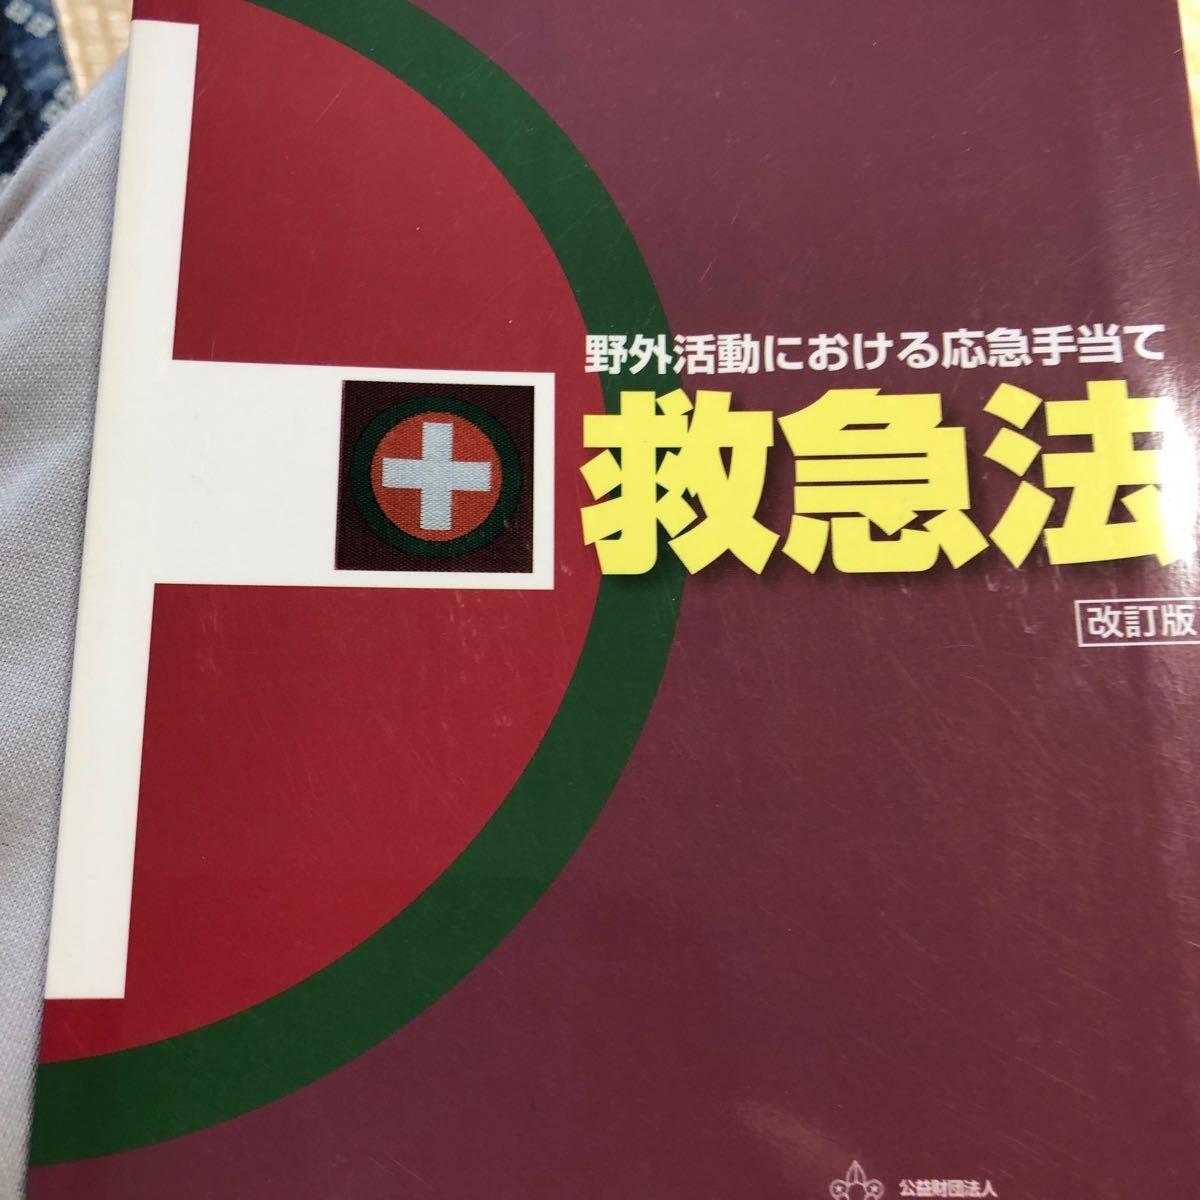 赤十字救急法講習 平成23年12月1日7版 日本赤十字社 アンダーライン 